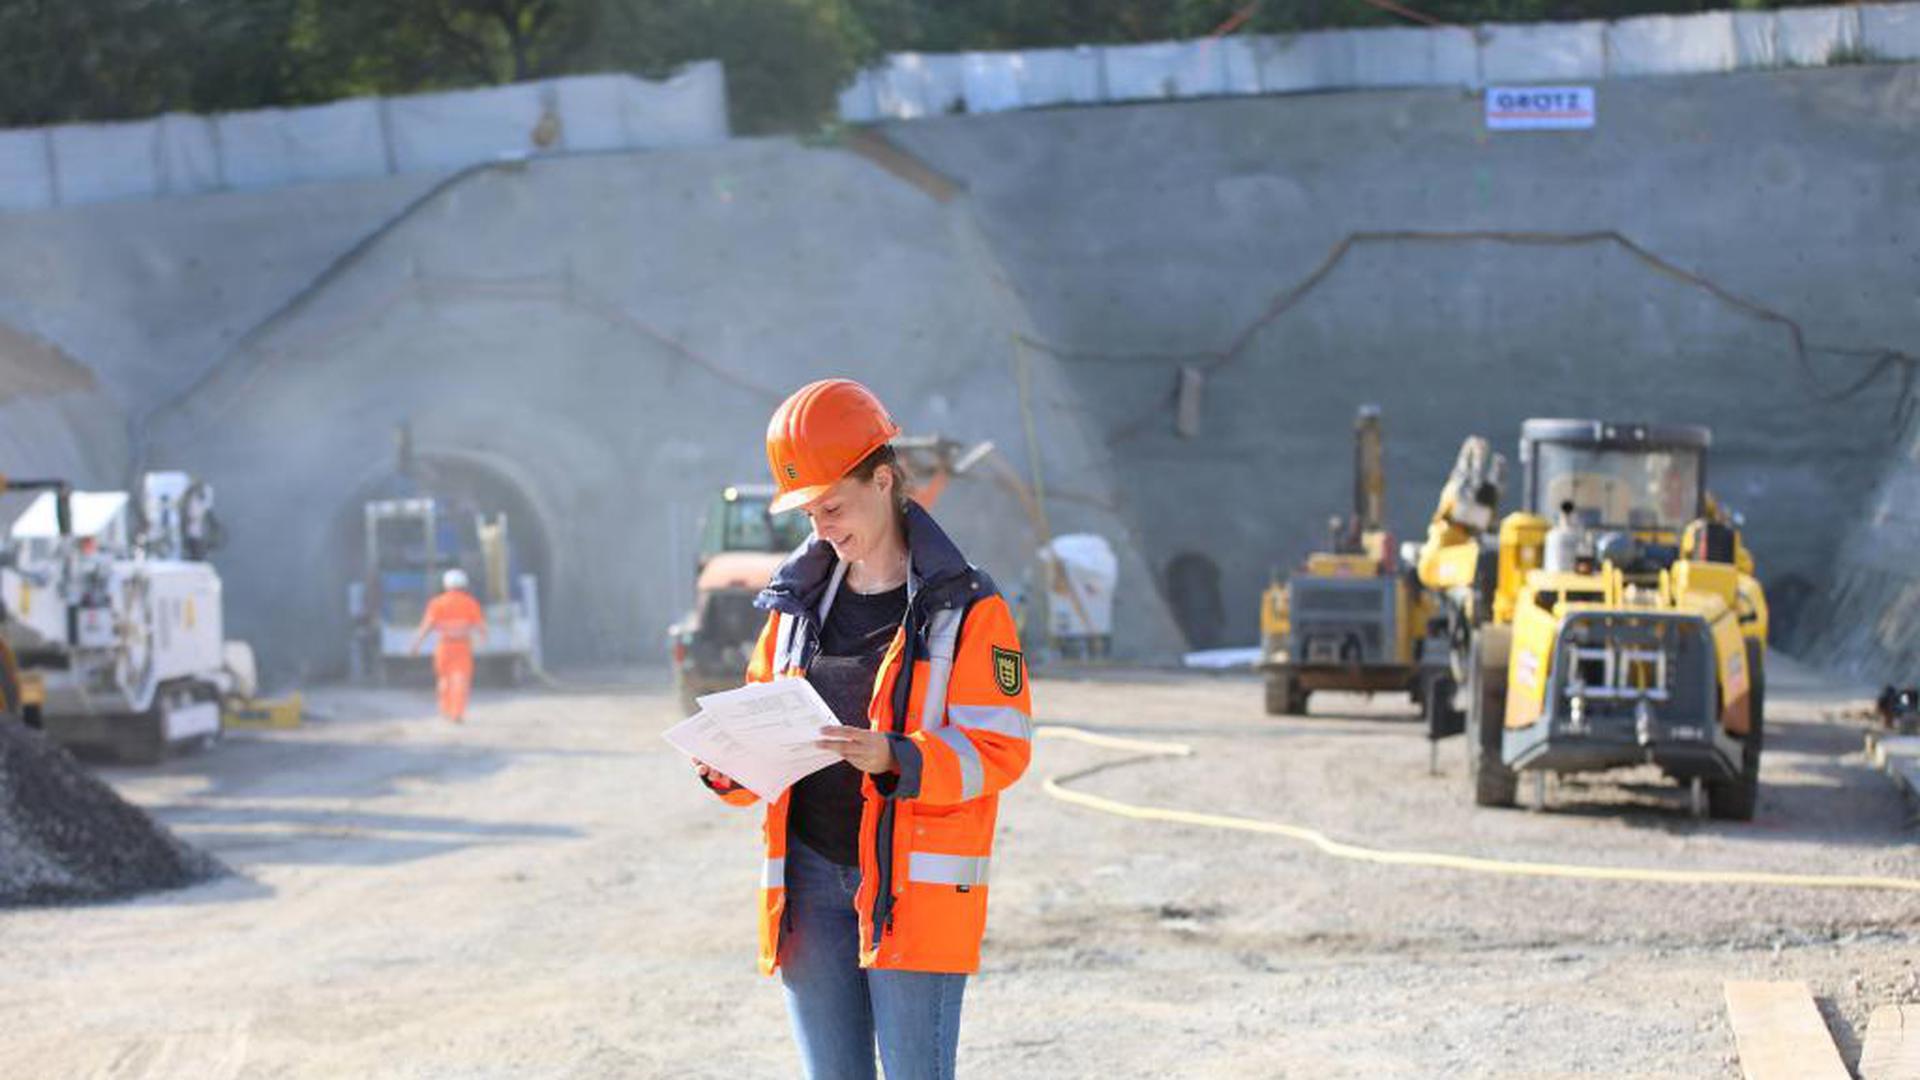 Alles im Plan: Die neue Projektleiterin Kathrin Hellwig steht in der Baugrube vor dem künftigen Nordportal des Arlingertunnels. Am Freitag beginnt der bergmännische Teil und damit die größte Herausforderung der Arbeiten. Hellwig: "Wir freuen uns, wenn es jetzt in den Berg reingeht und wir größere Ergebnisse sehen."